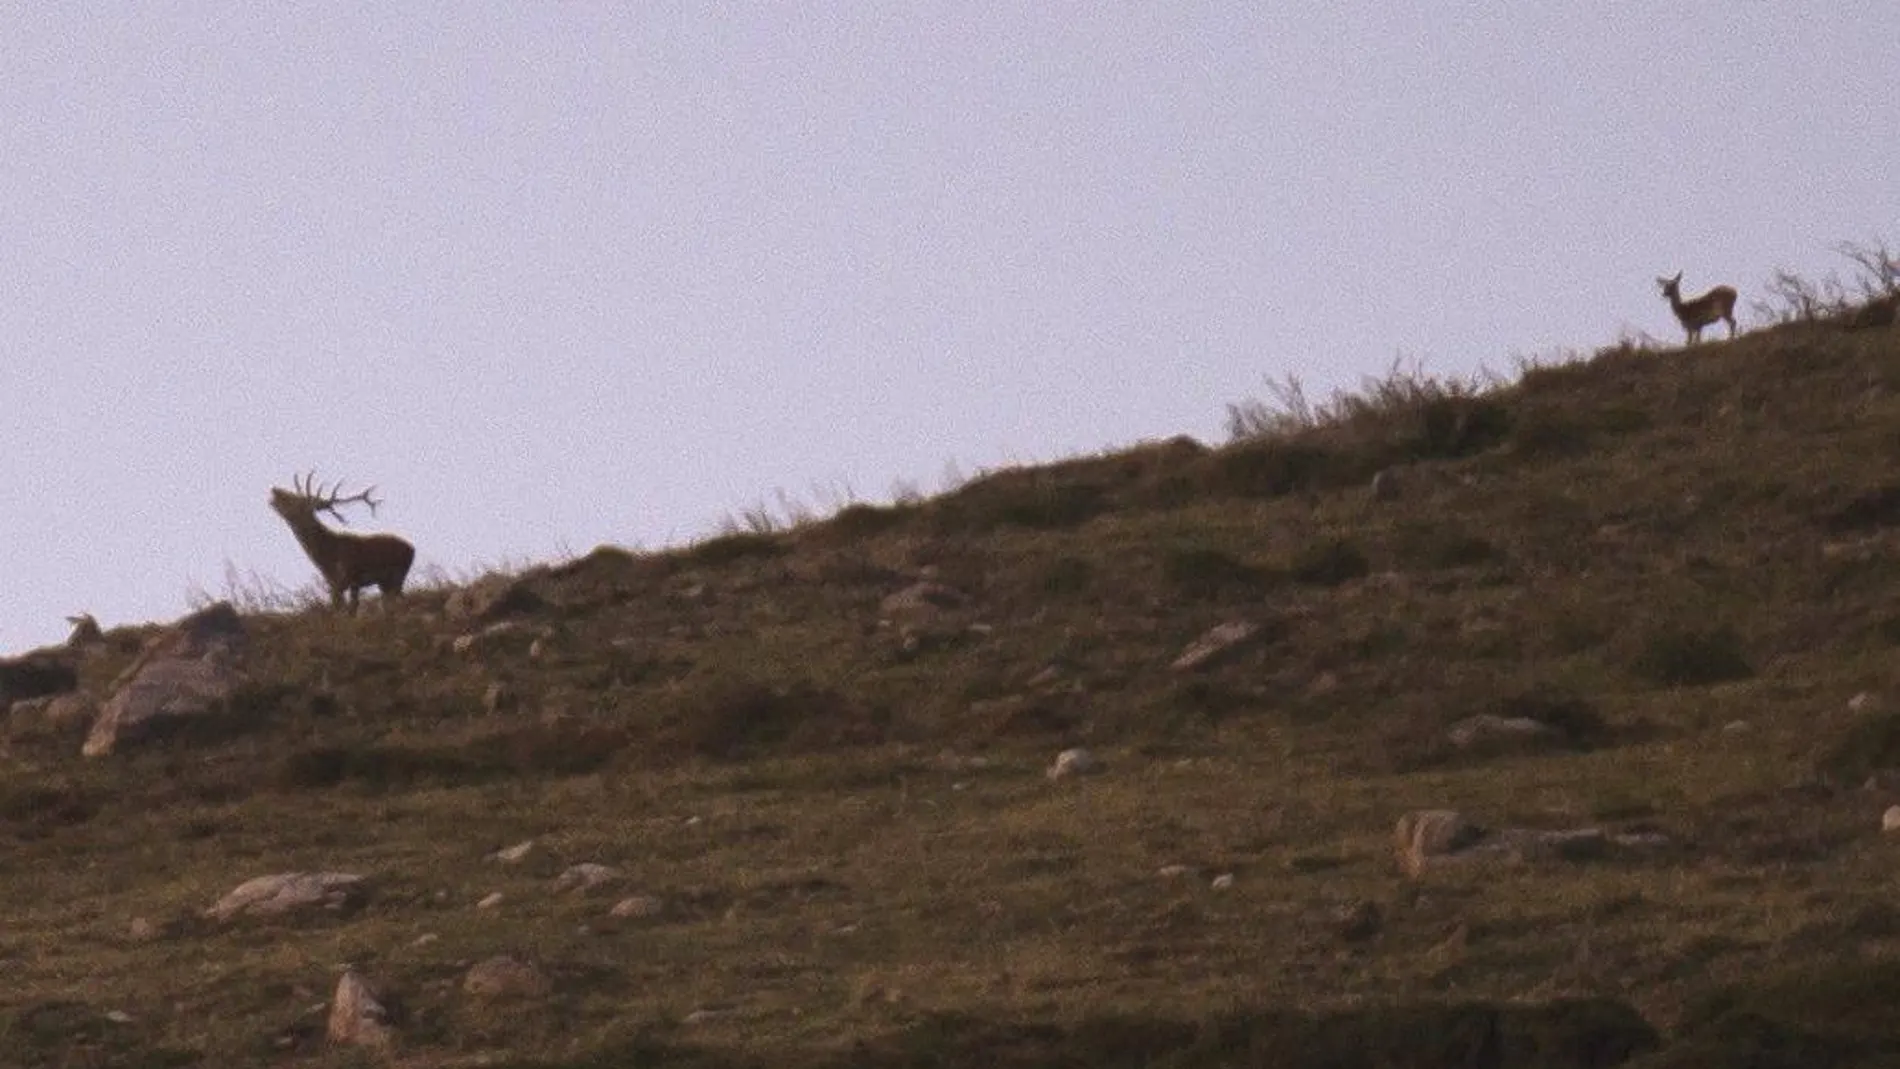 Un ciervo durante la berrea, una técnica de cortejo por parte de los ciervos para atraer a las hembras mediante berridos, en los Montes del Parque Natural del Saja-Besaya en Cantabria